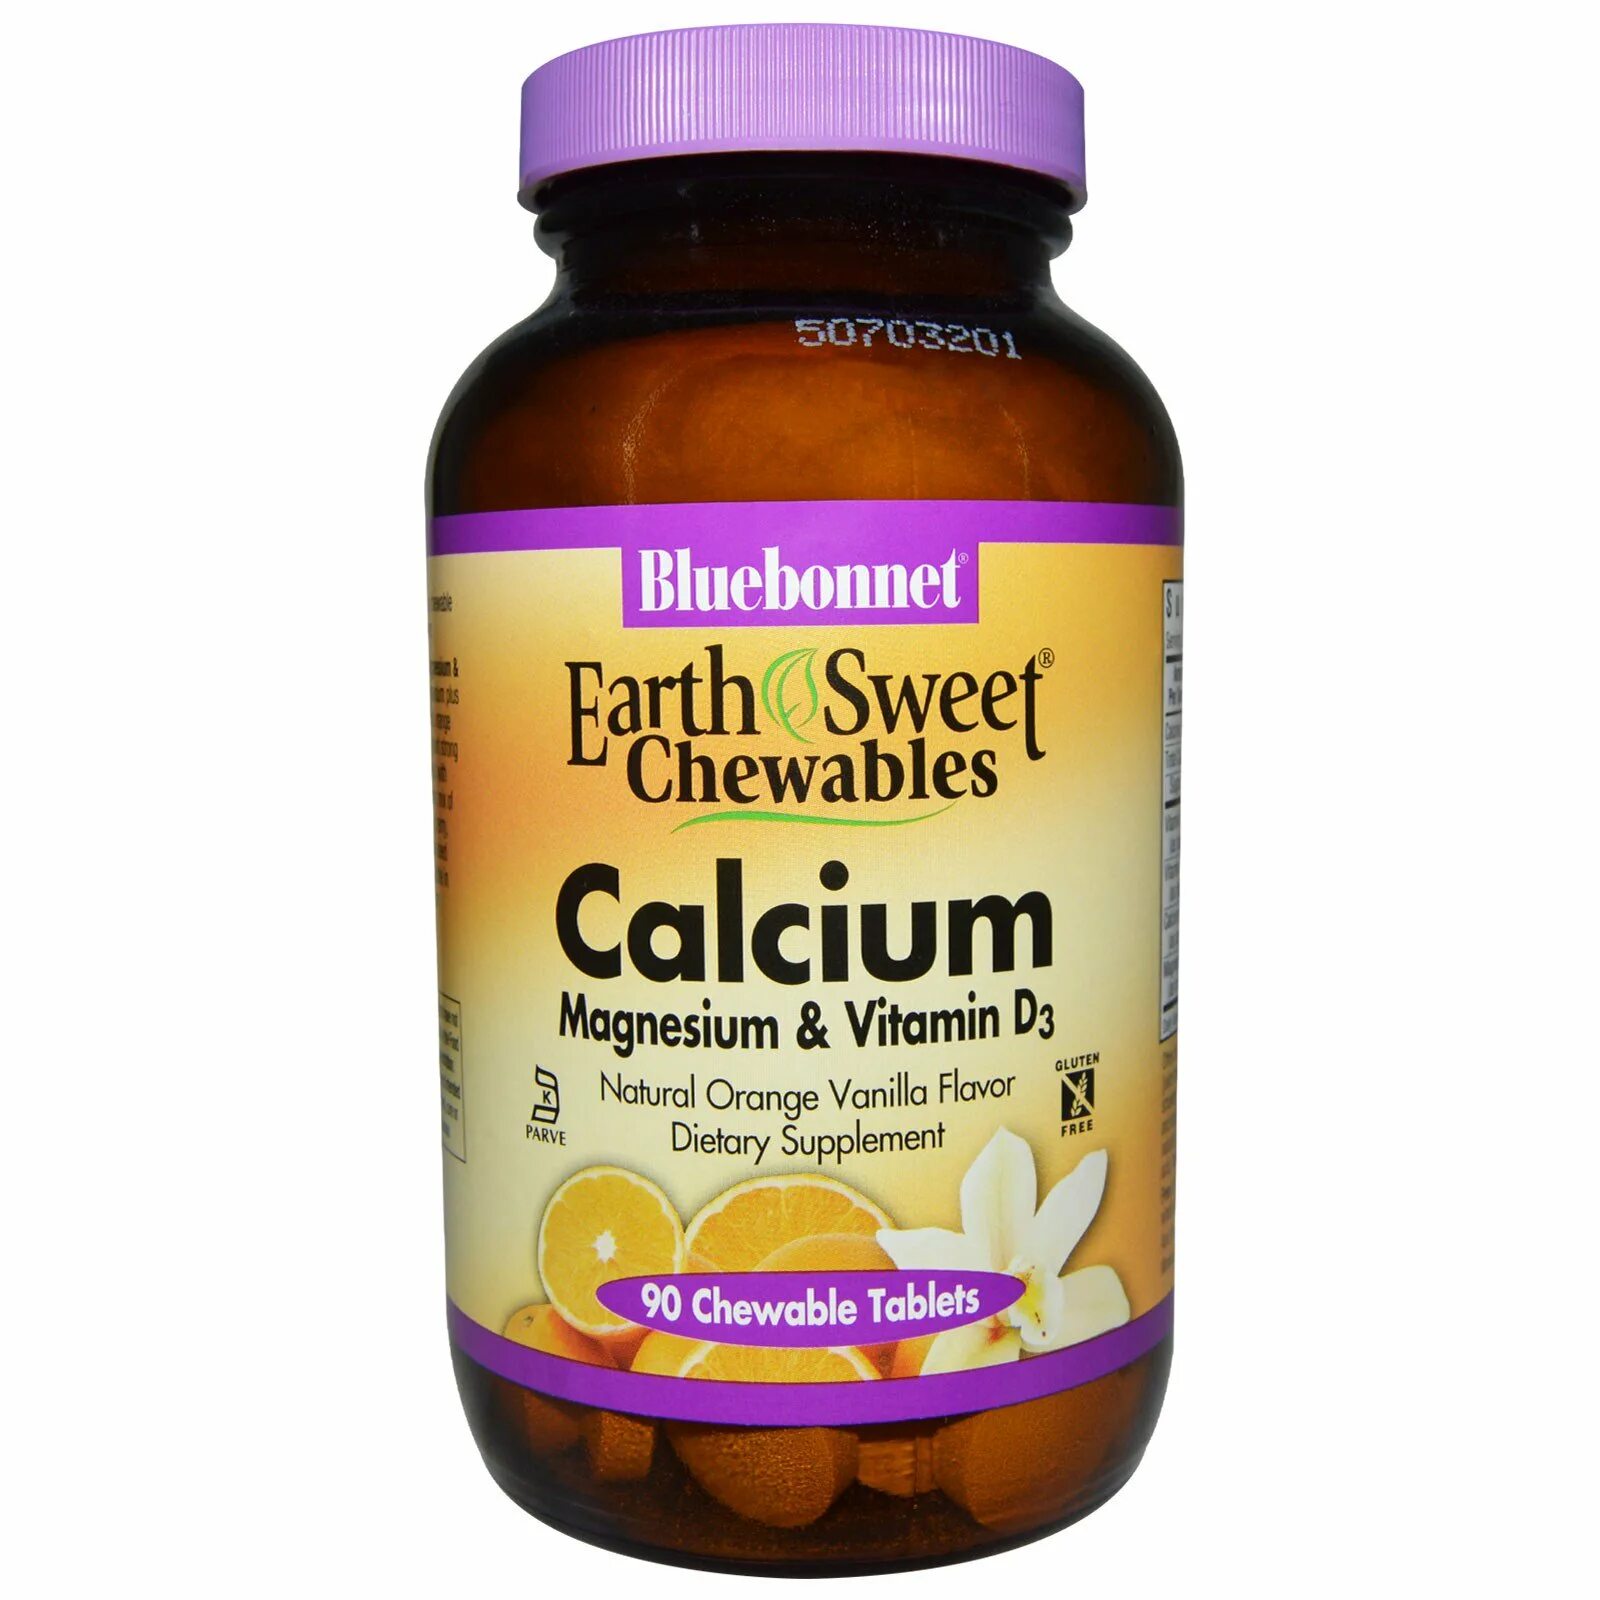 Как принимать витамин кальций магний. Витамин Calcium Magnesium витамин д3. Витамин д3 холекальциферол. Витамины Кальциум Магнезиум д3. Колекальциферол (витамин d3).